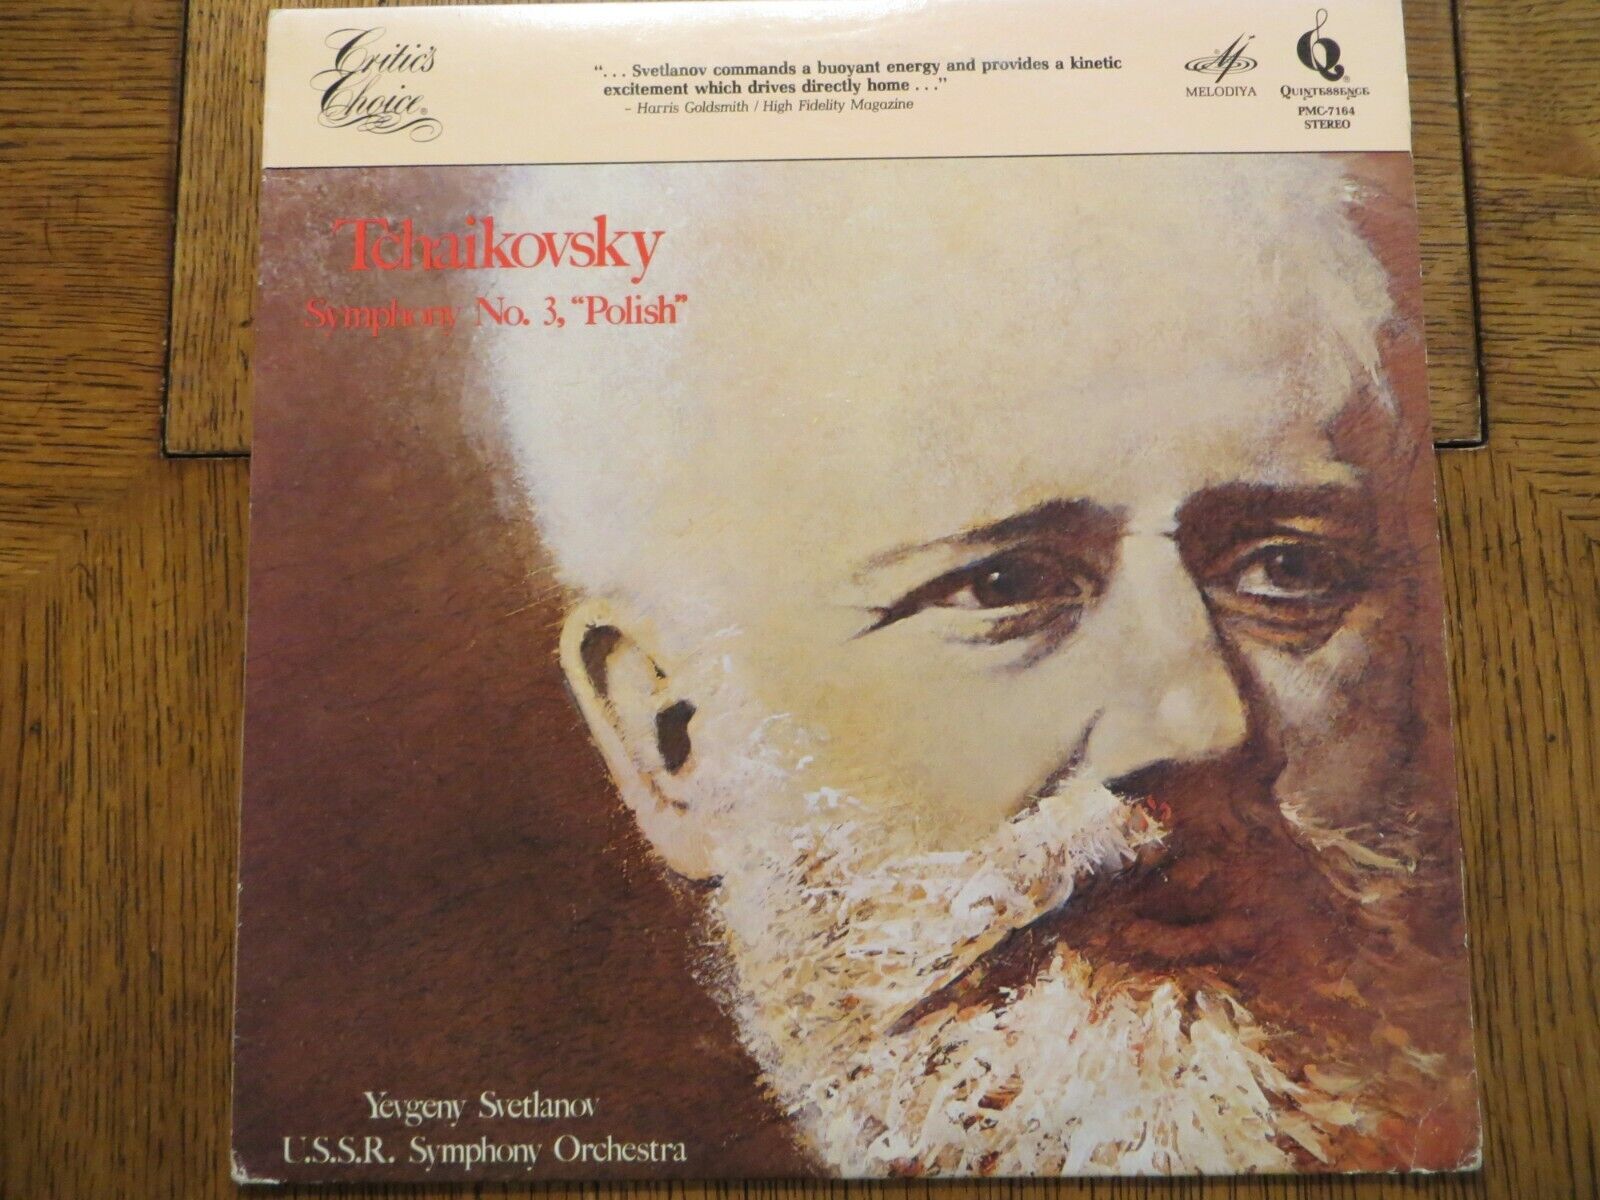 Yevgeny Svetlanov – Tchaikovsky Symphony No. 3, Polish 1980 Vinyl LP EX/EX